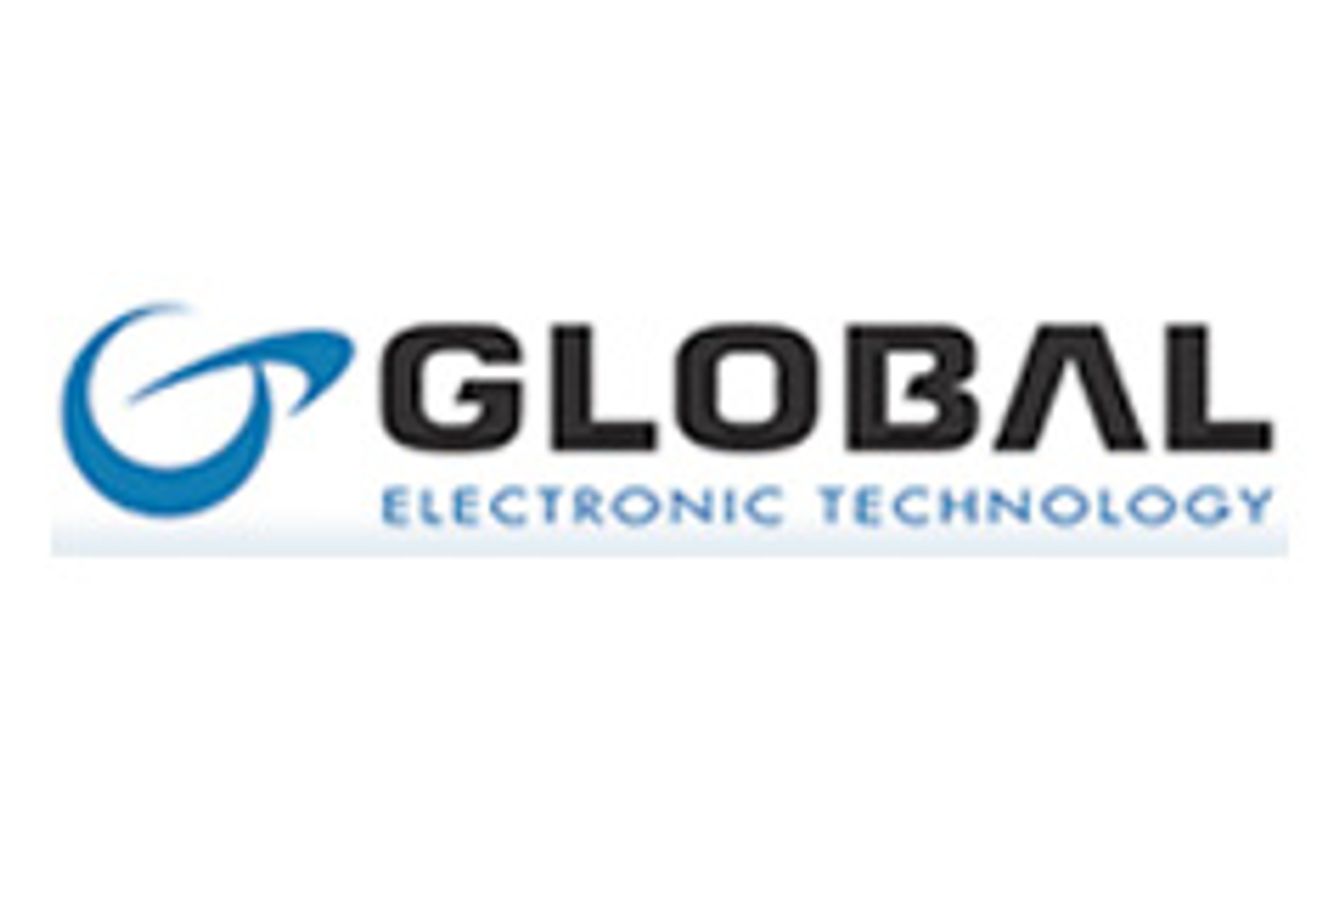 Global Electronic Technology, Inc.